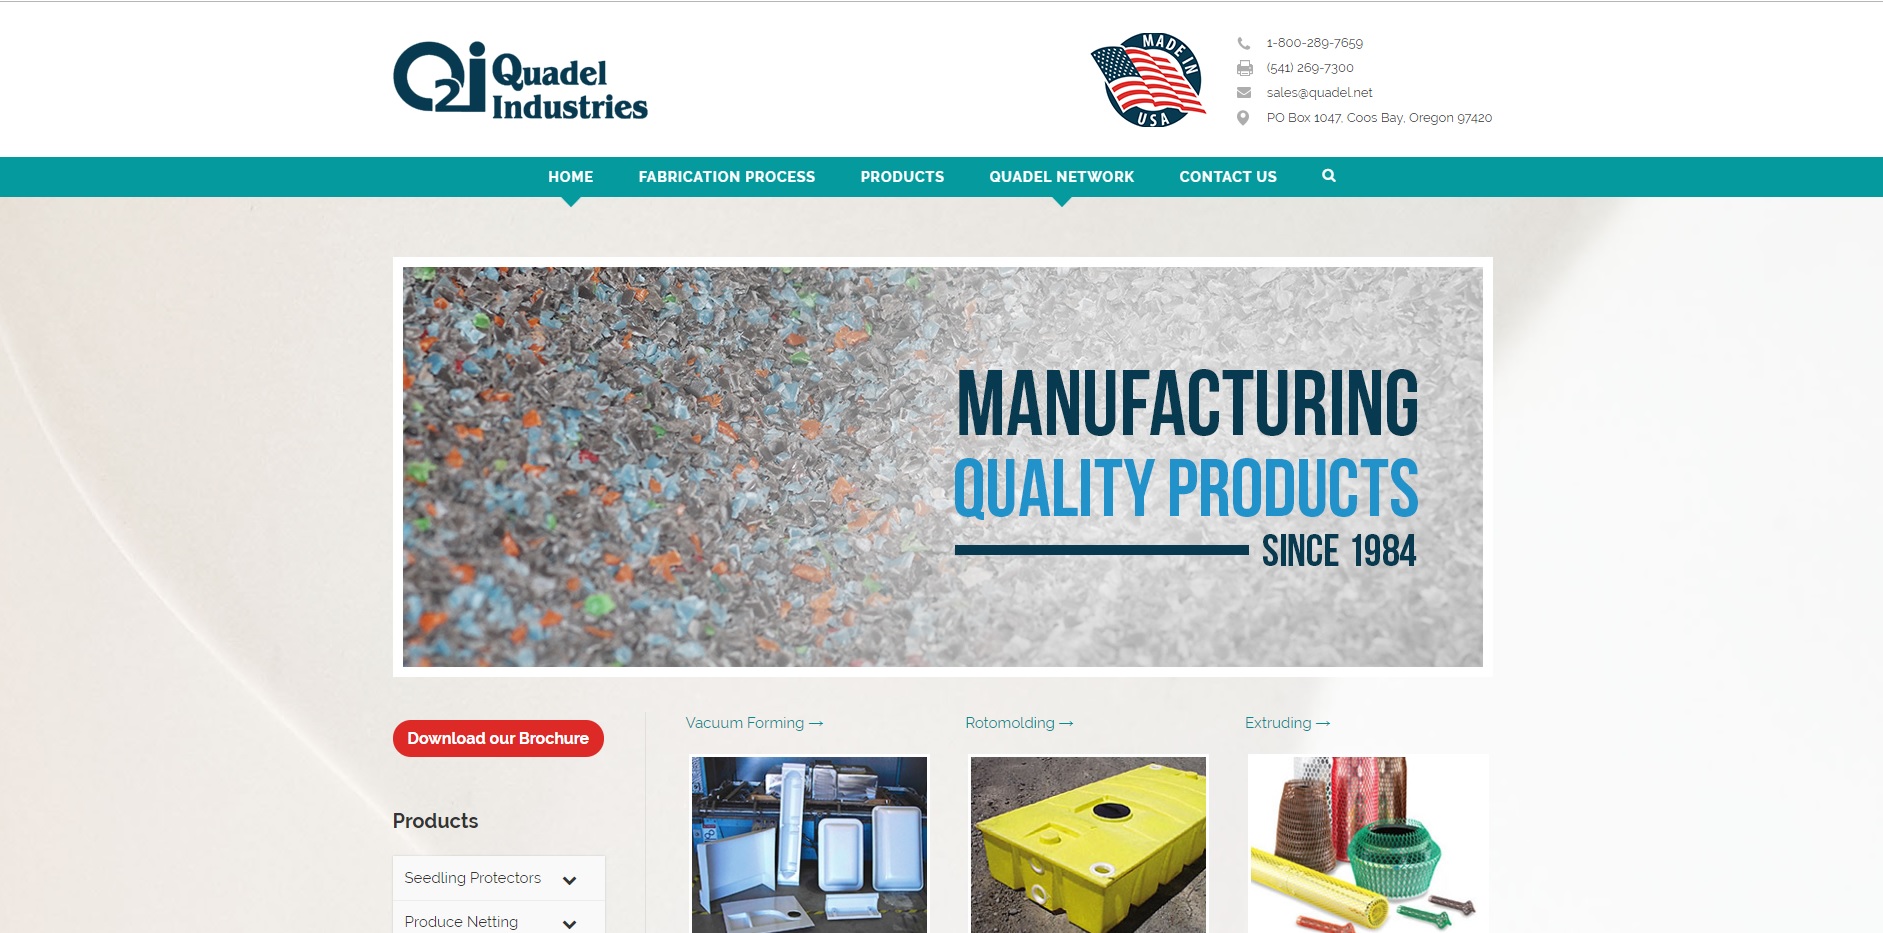 Quadel Industries